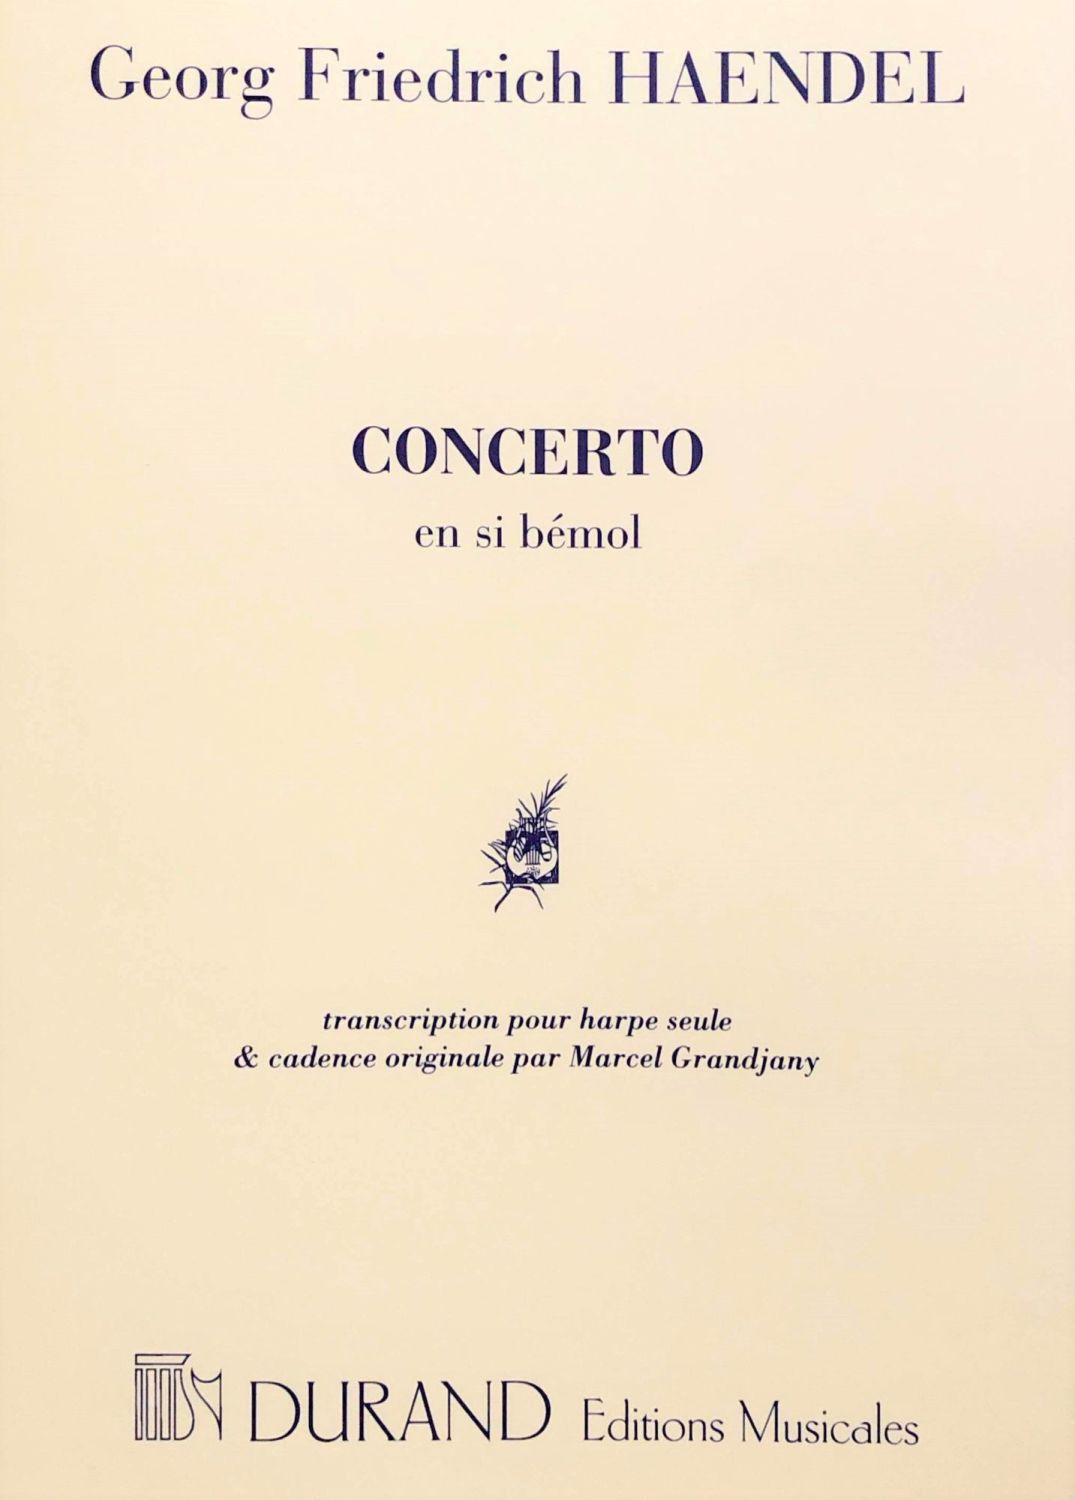 Concerto in B Flat - Haendel transcribed for Harp by Marcel Grandjany